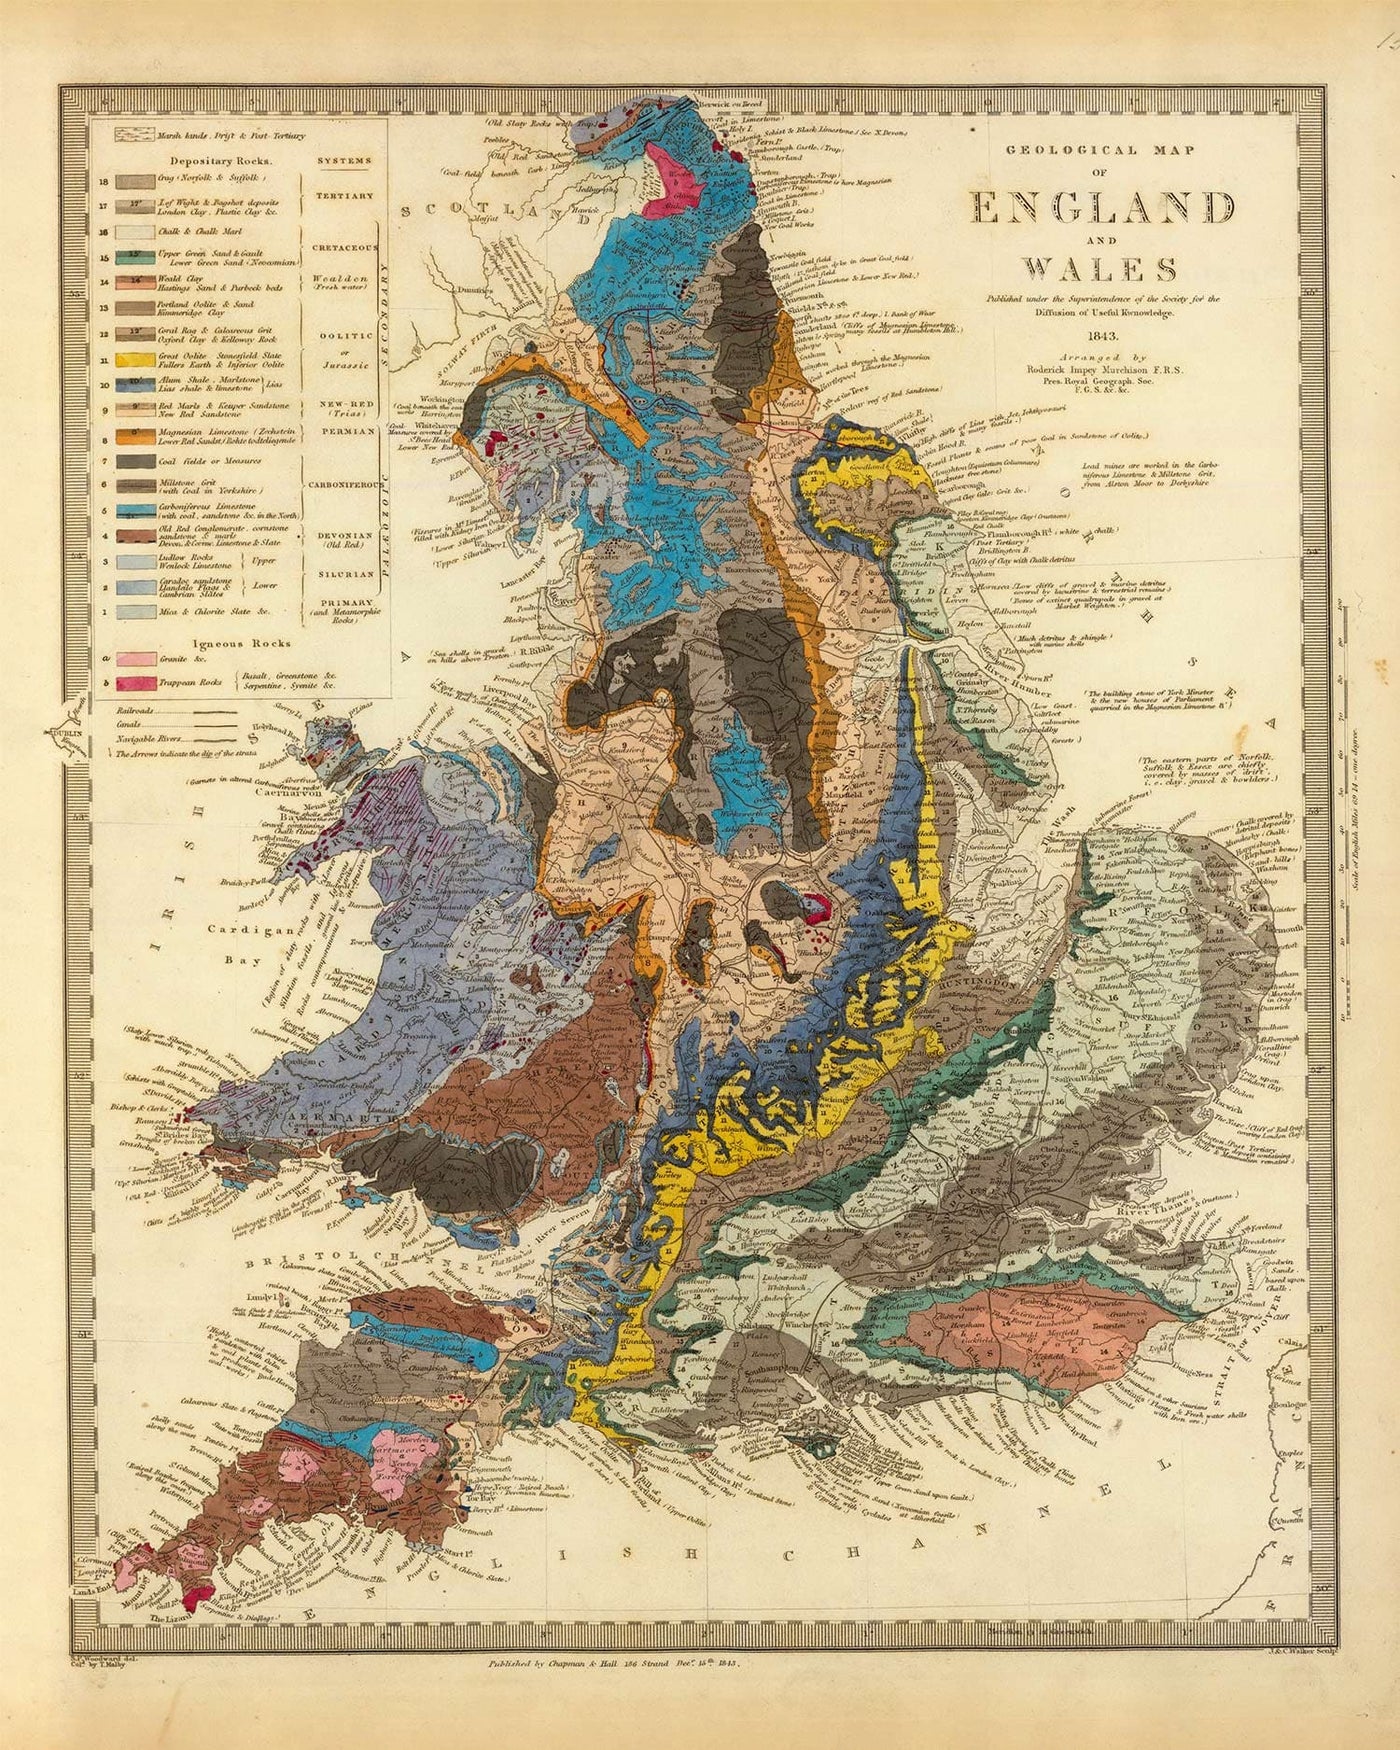 Masque de visage / guêtre d'Angleterre - avec carte géologique vintage de l'Angleterre et du Pays de Galles par Roderick Impey Murchison, 1843